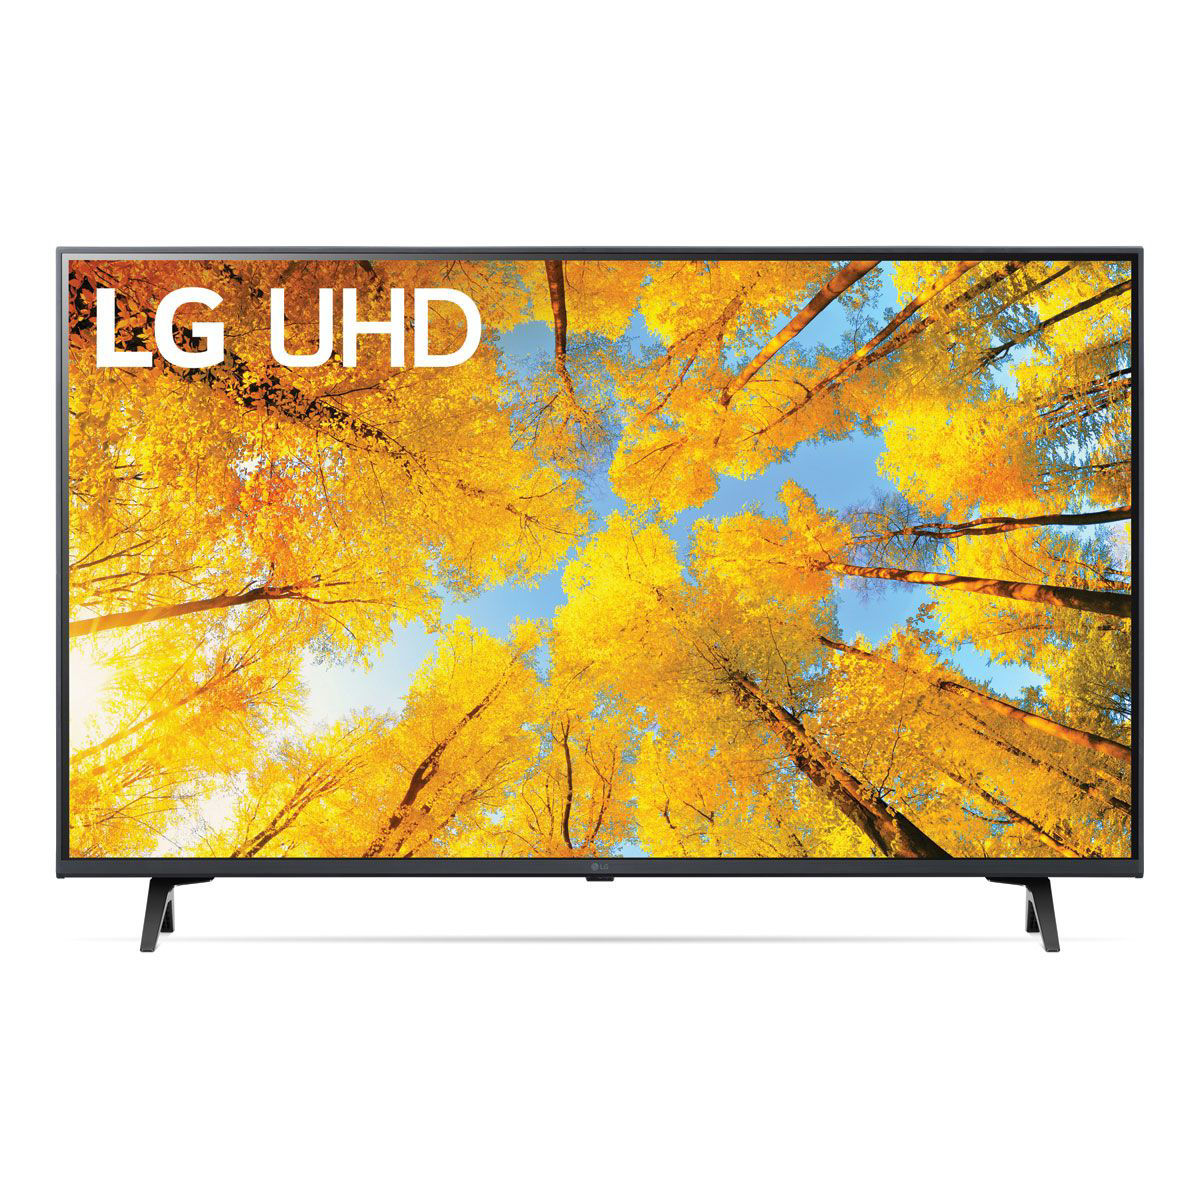 LG 70 SMART 4K ULTRA HD LED TV